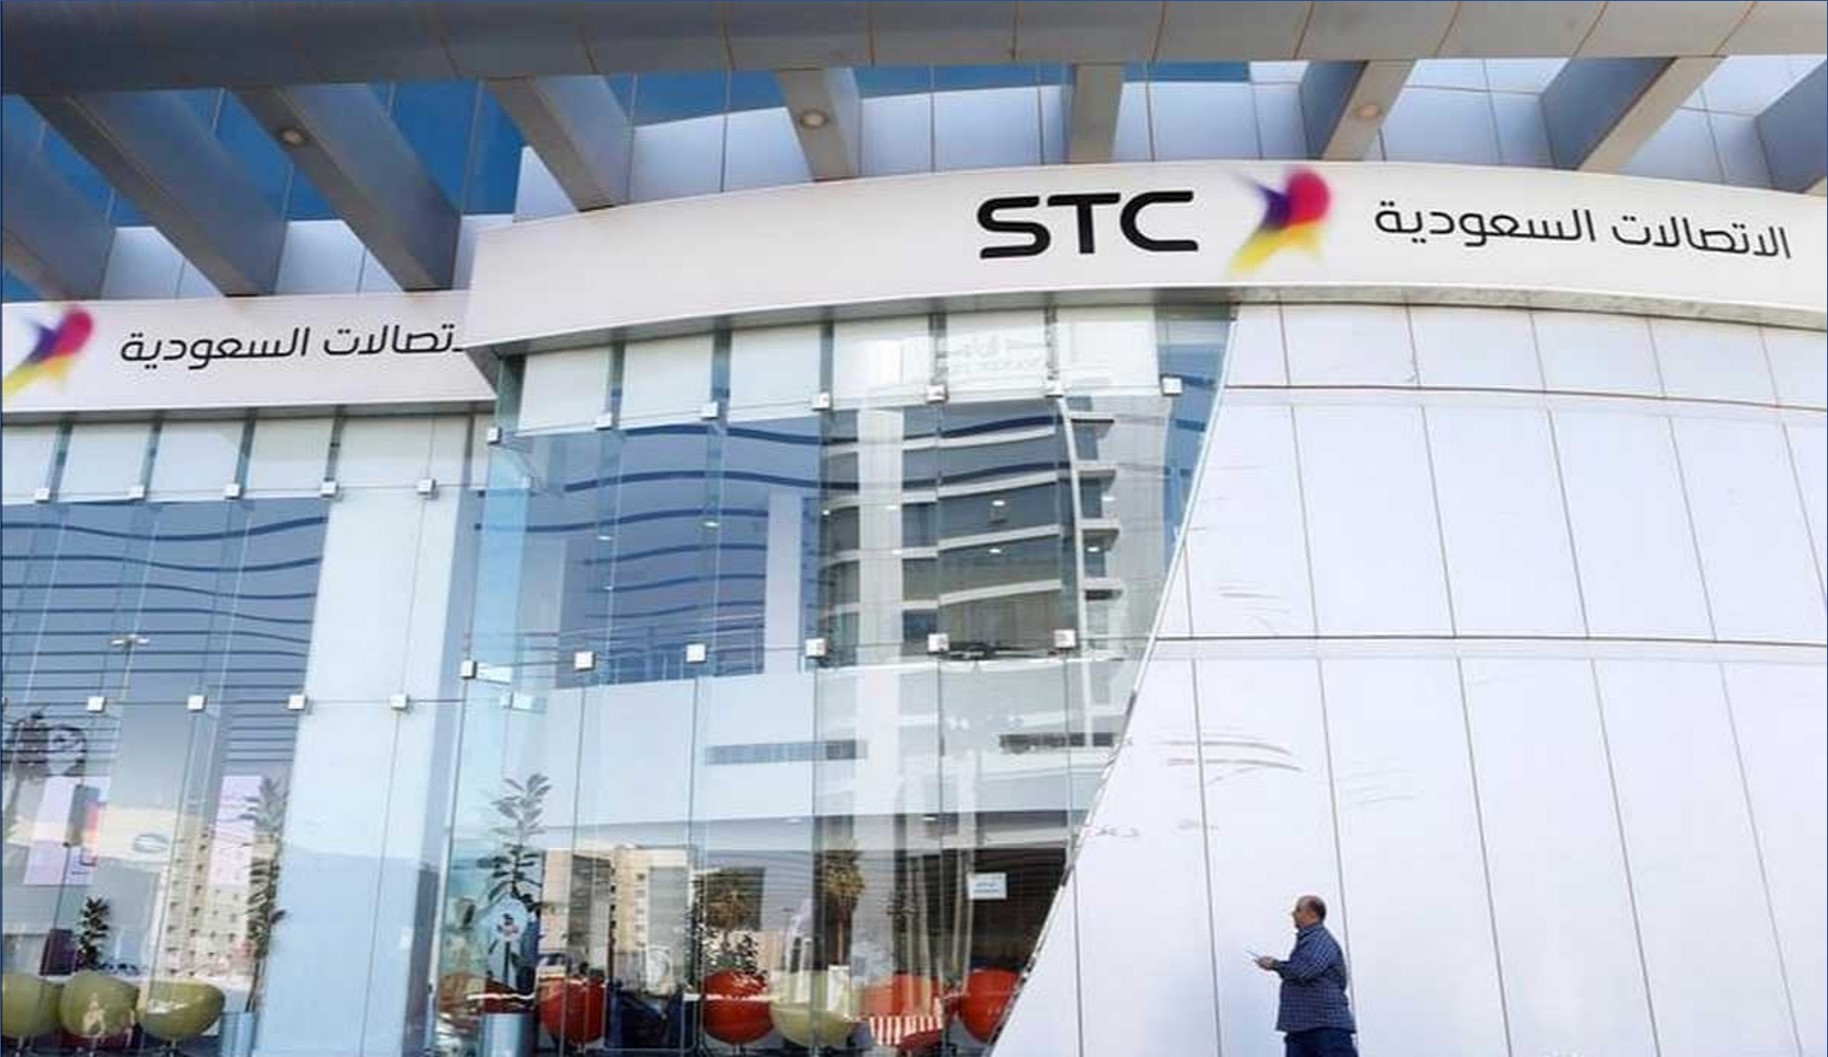 شركة الاتصالات السعودية تعلن عن برنامج التدريب المنتهي بالتوظيف